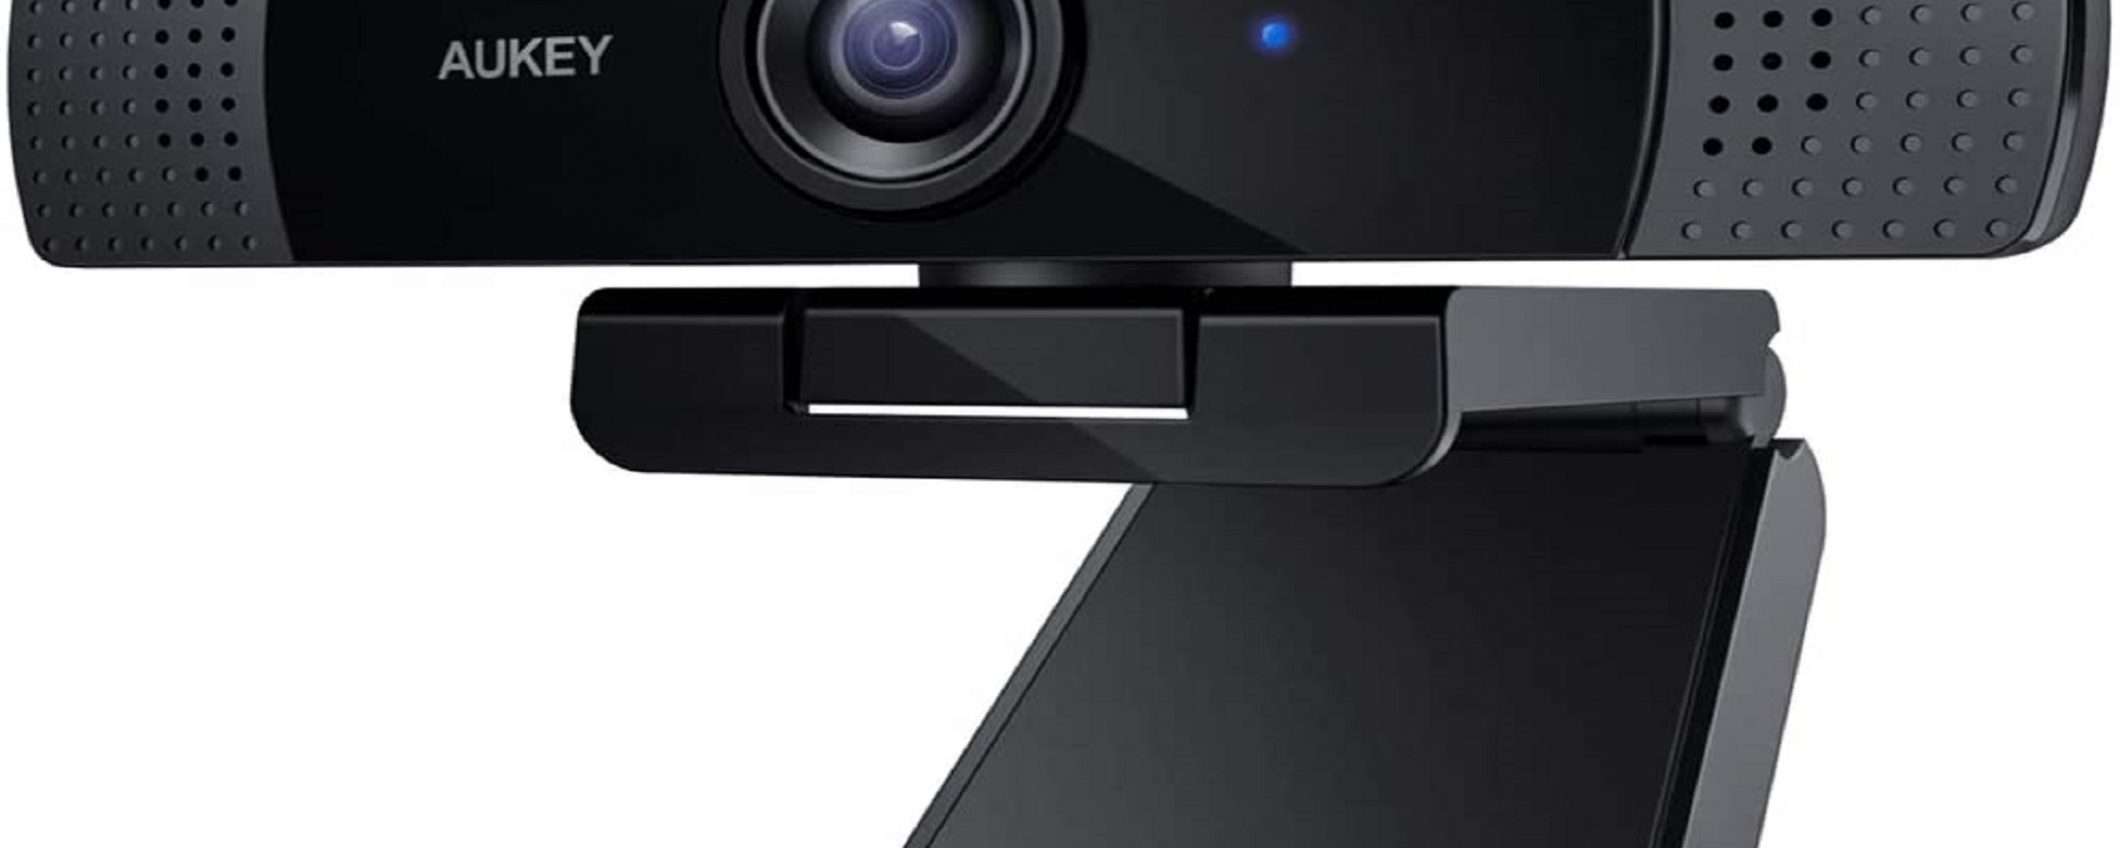 Webcam FullHD a soli 32€: ottima per chiamate e streaming